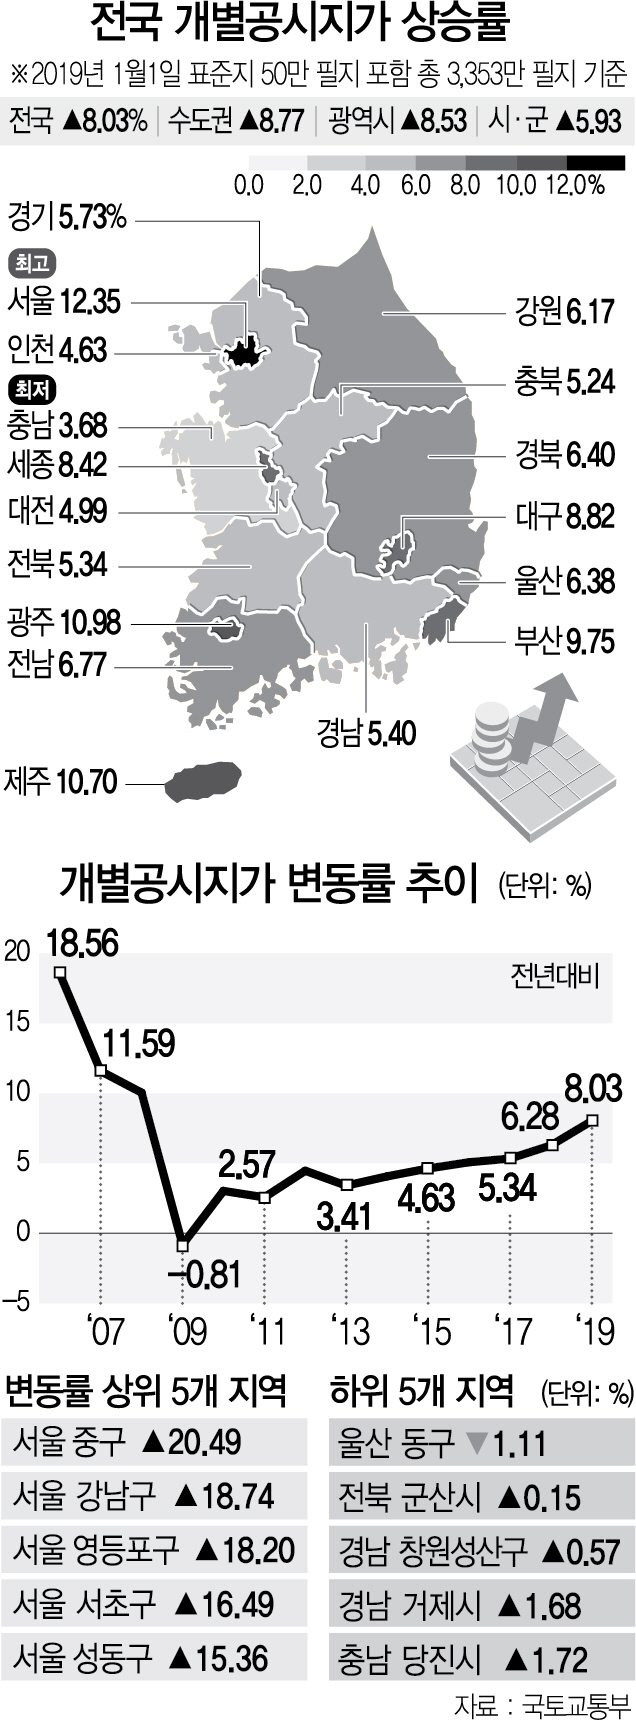 서울 공시지가 12.3%↑ '12년만에 최대'...형평성 논란 여전